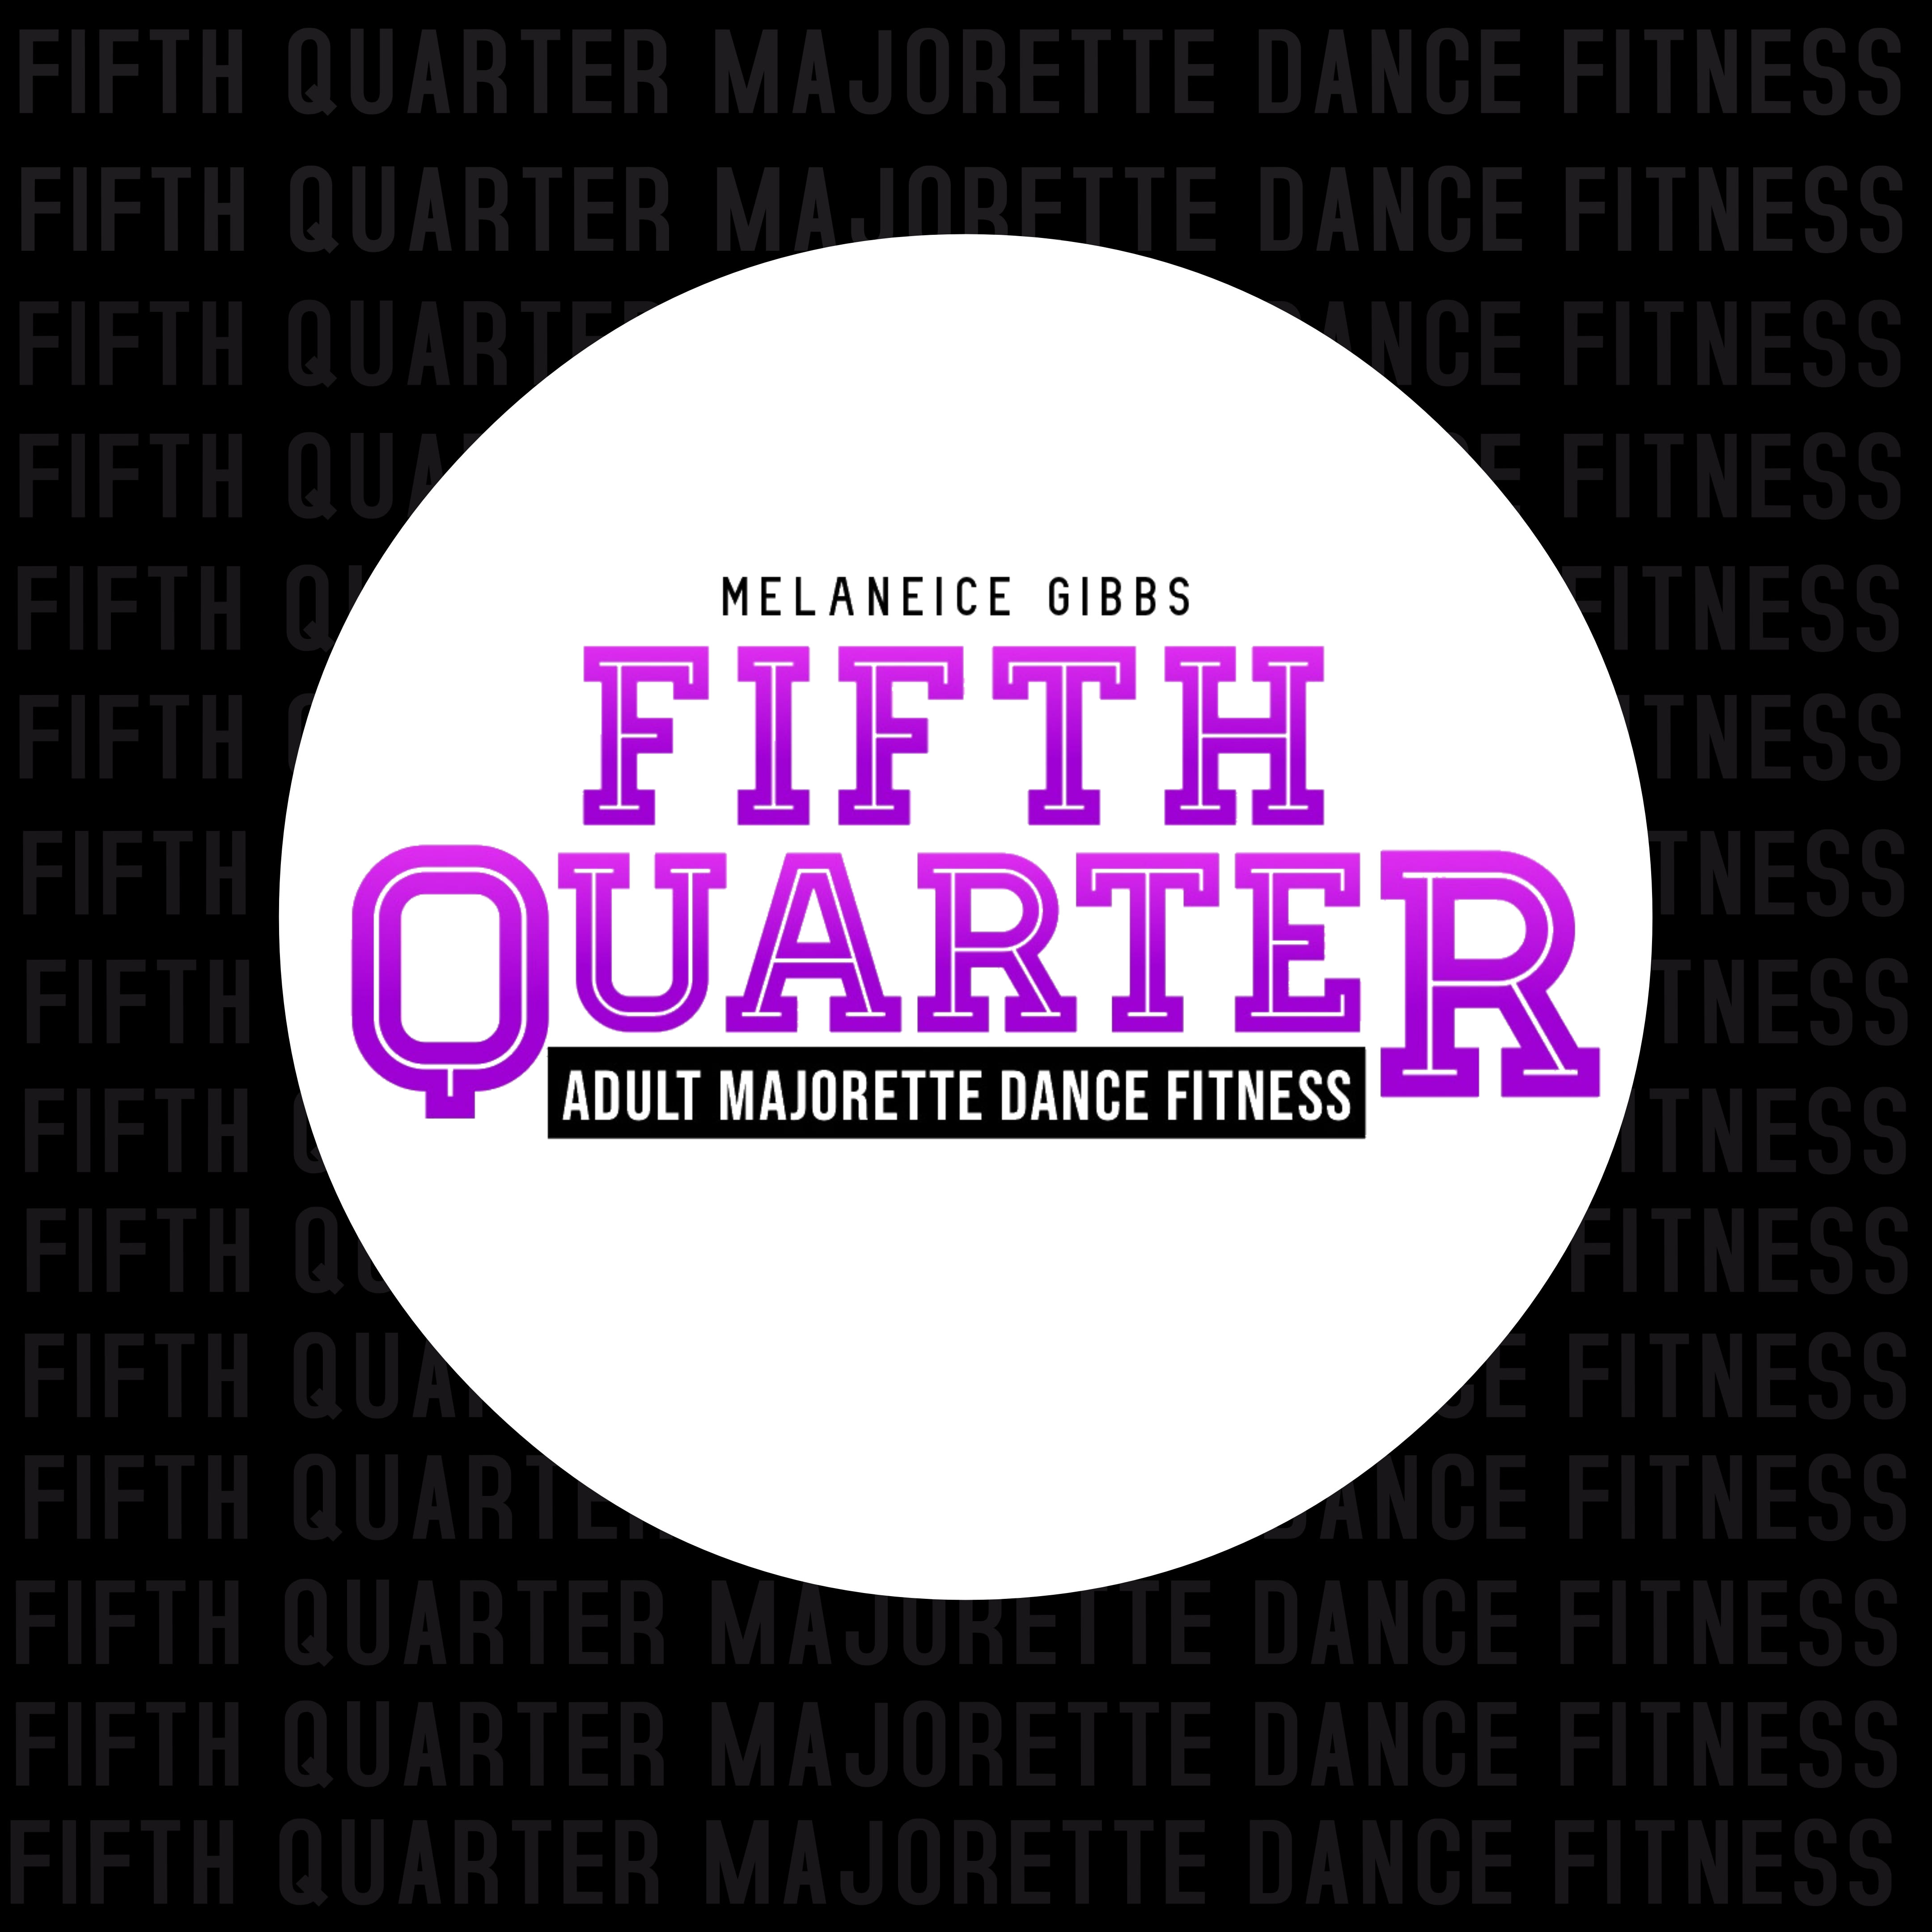 Fifth Quarter Majorette Dance Fitness